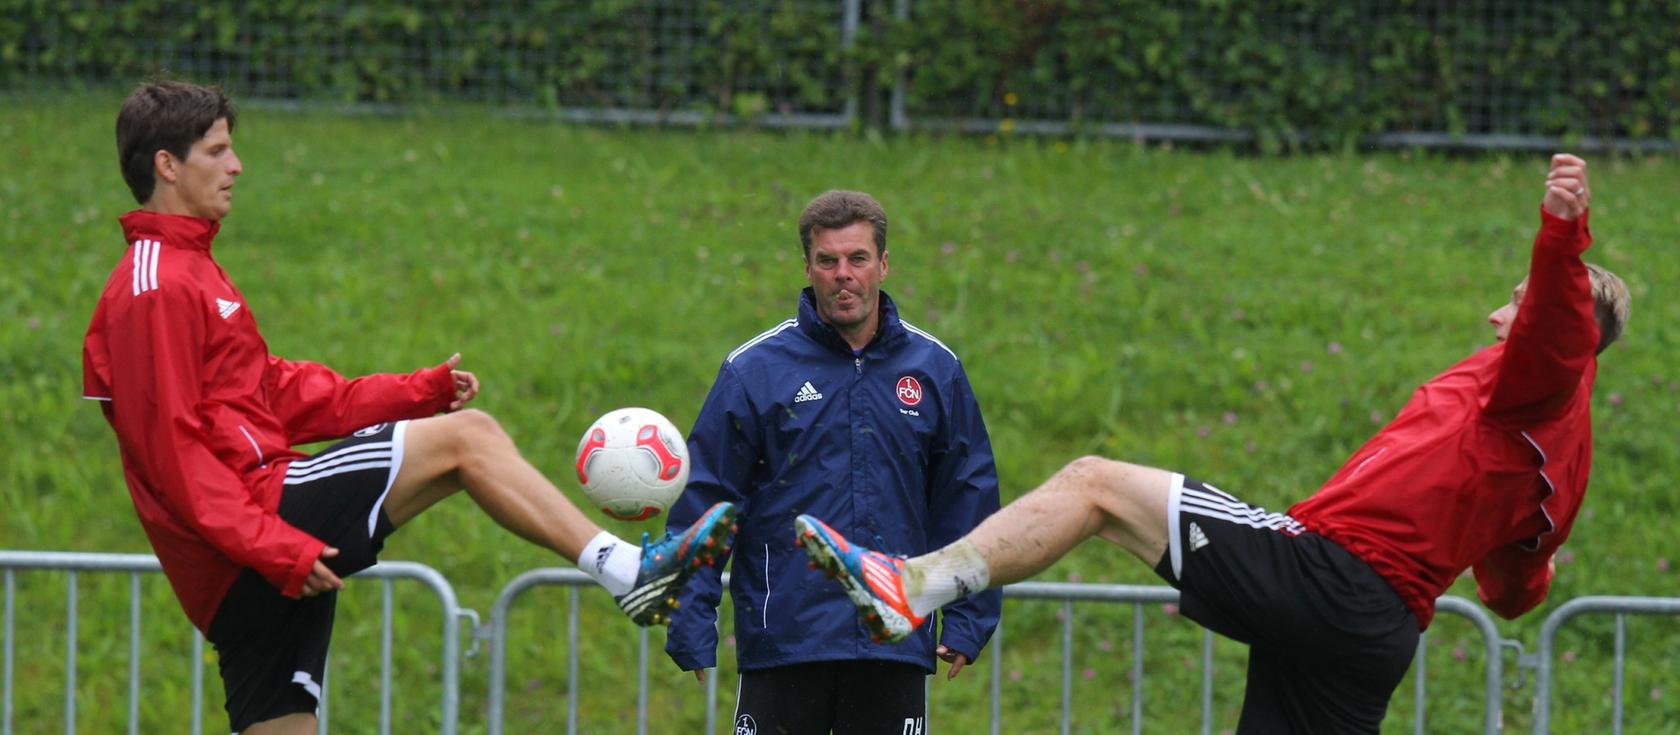 Zum Zungeschnalzen: Club-Coach Dieter Hecking beobachtet genau, wie seine Schützlinge Timm Klose und Neuzugang Sebastian Polter die Beine hochnehmen.